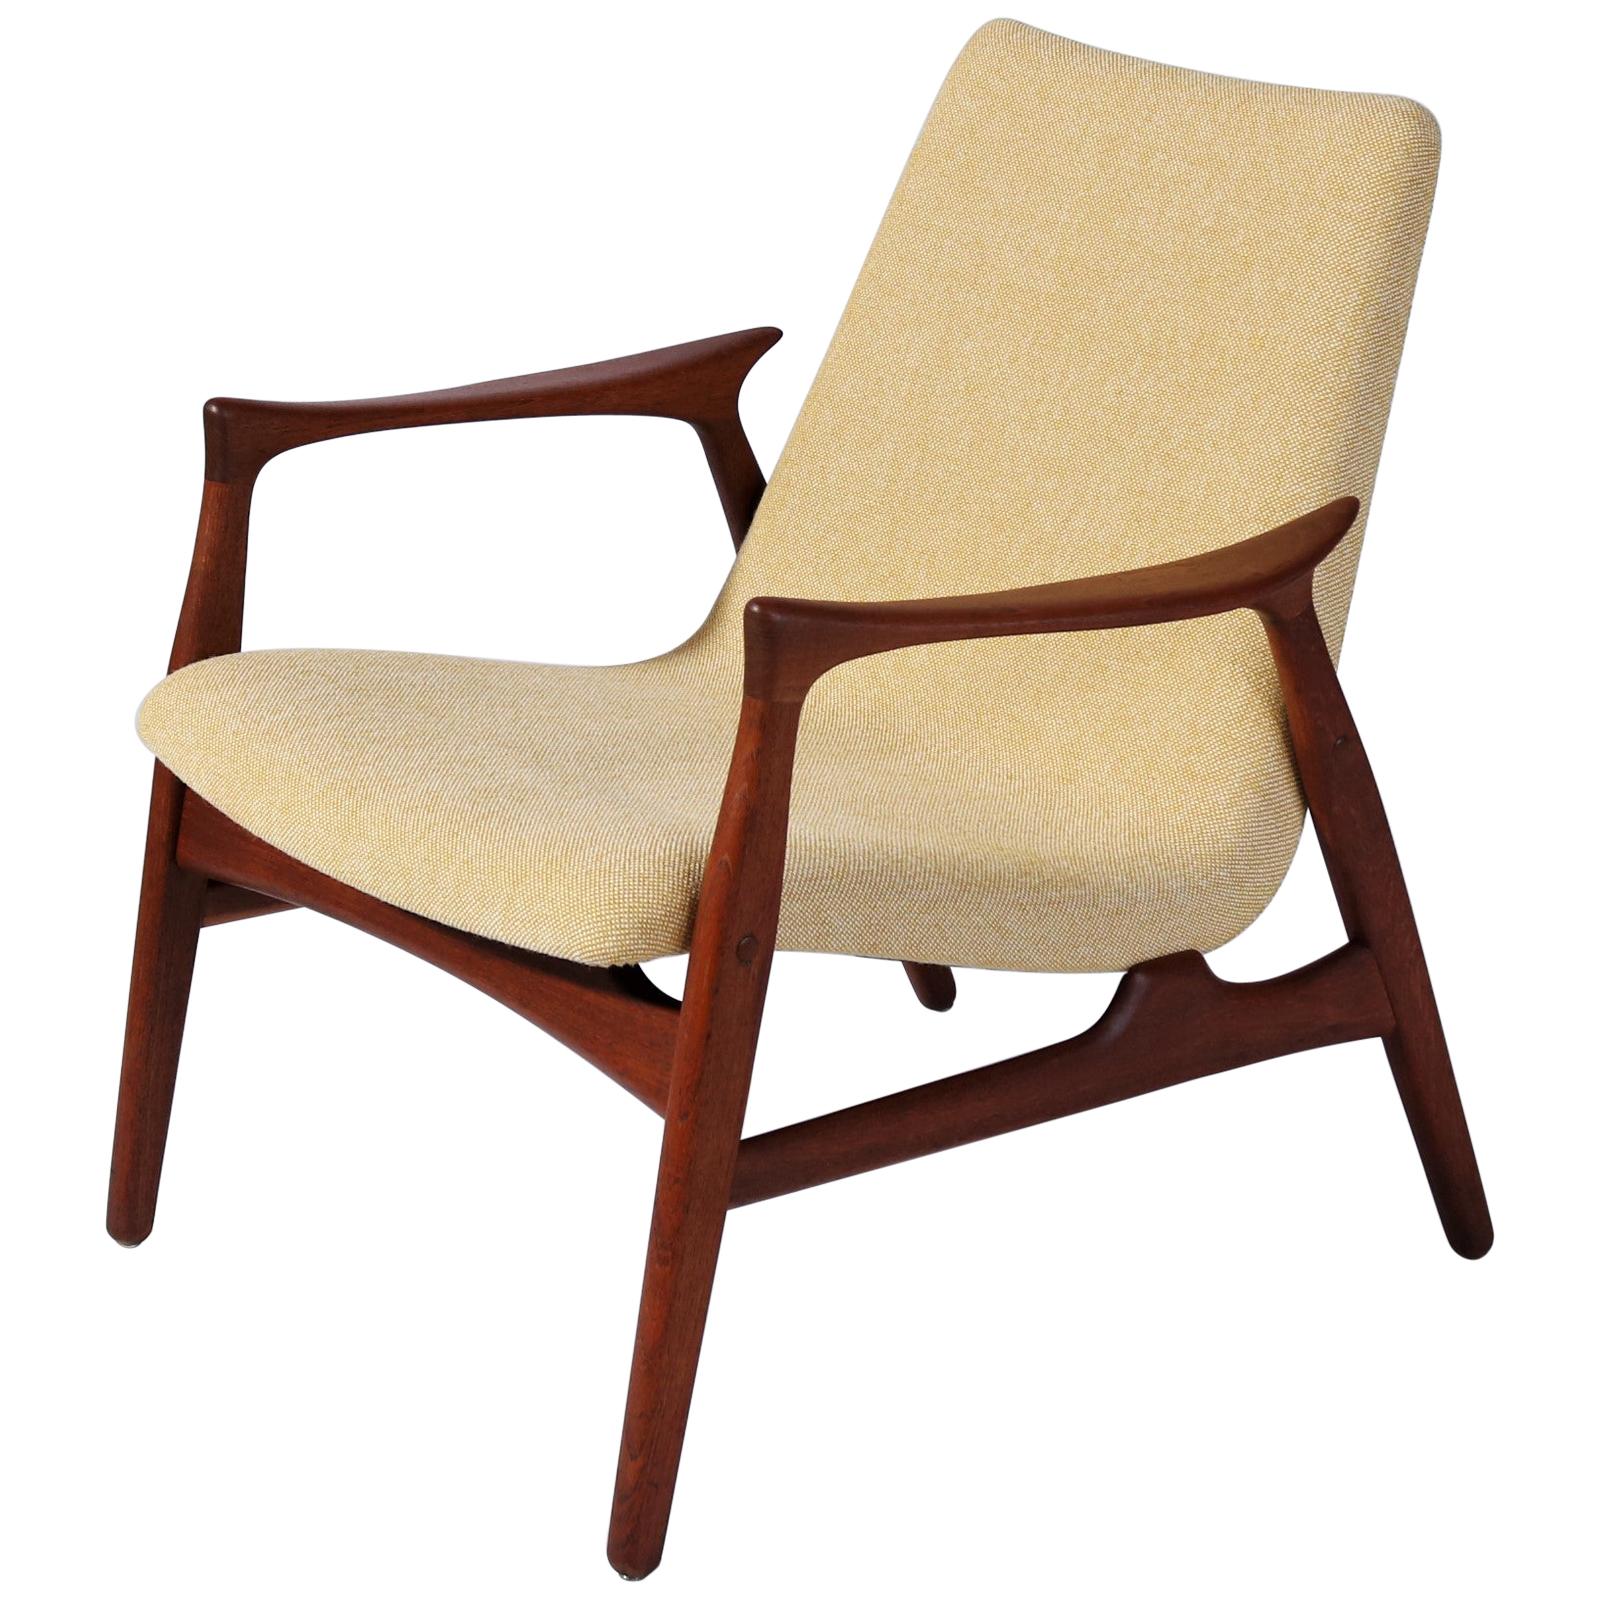 Danish Modern Easy Chair in Teak Wood by Arne Hovmand Olsen, Denmark, 1958